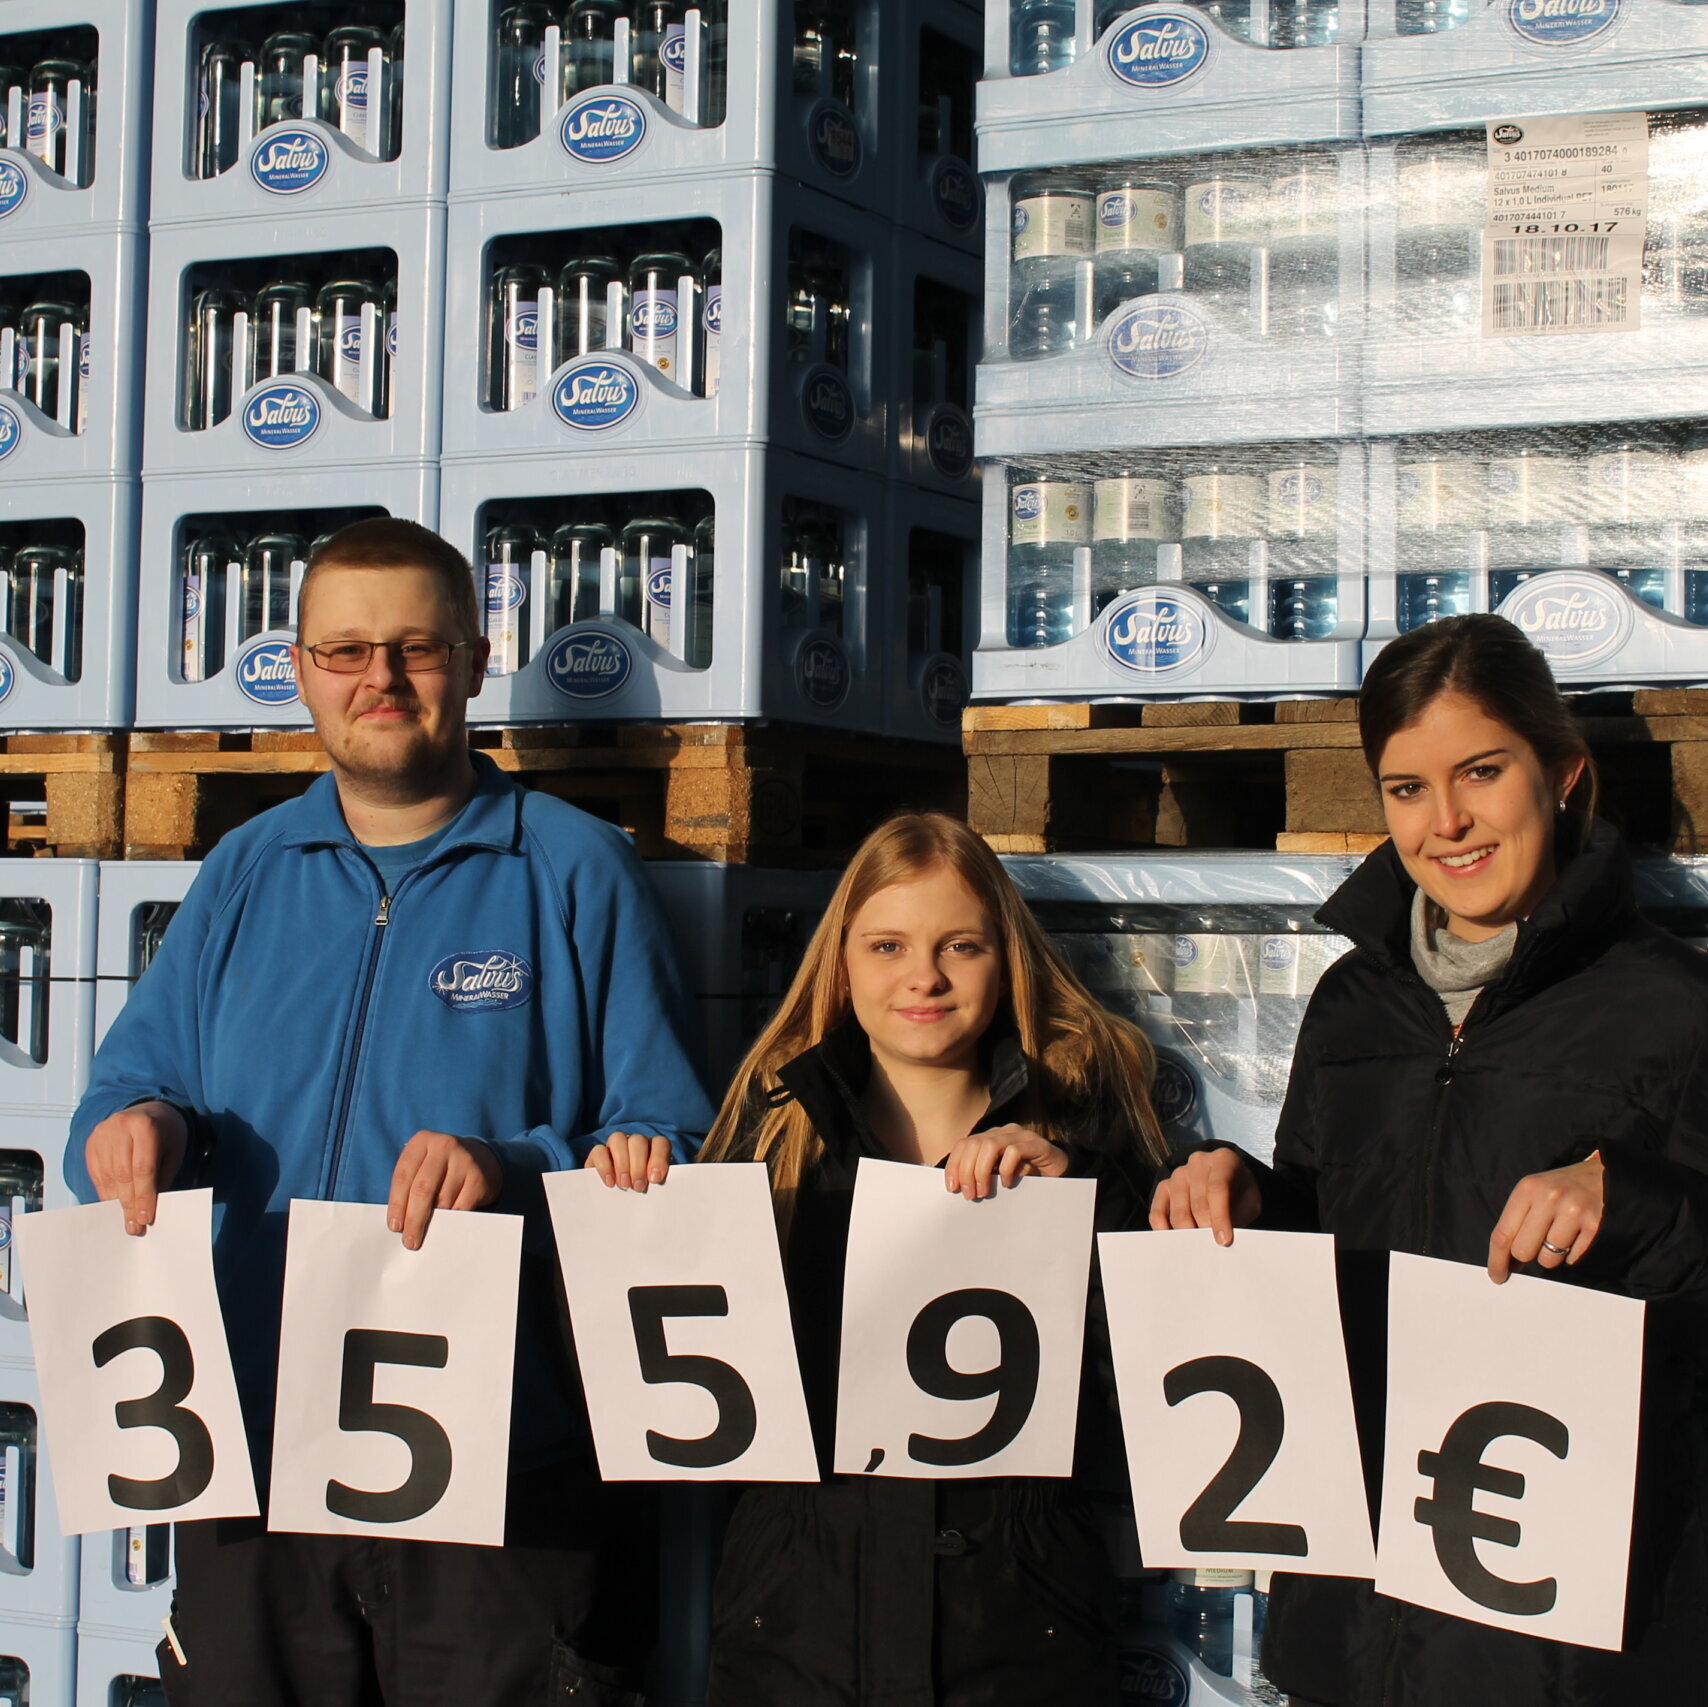 Darstellung des Spendenbetrags von 355,92 €, der bei der Spendenaktion der Salvus-Mitarbeitenden für das Haus Hannah zusammen kam.